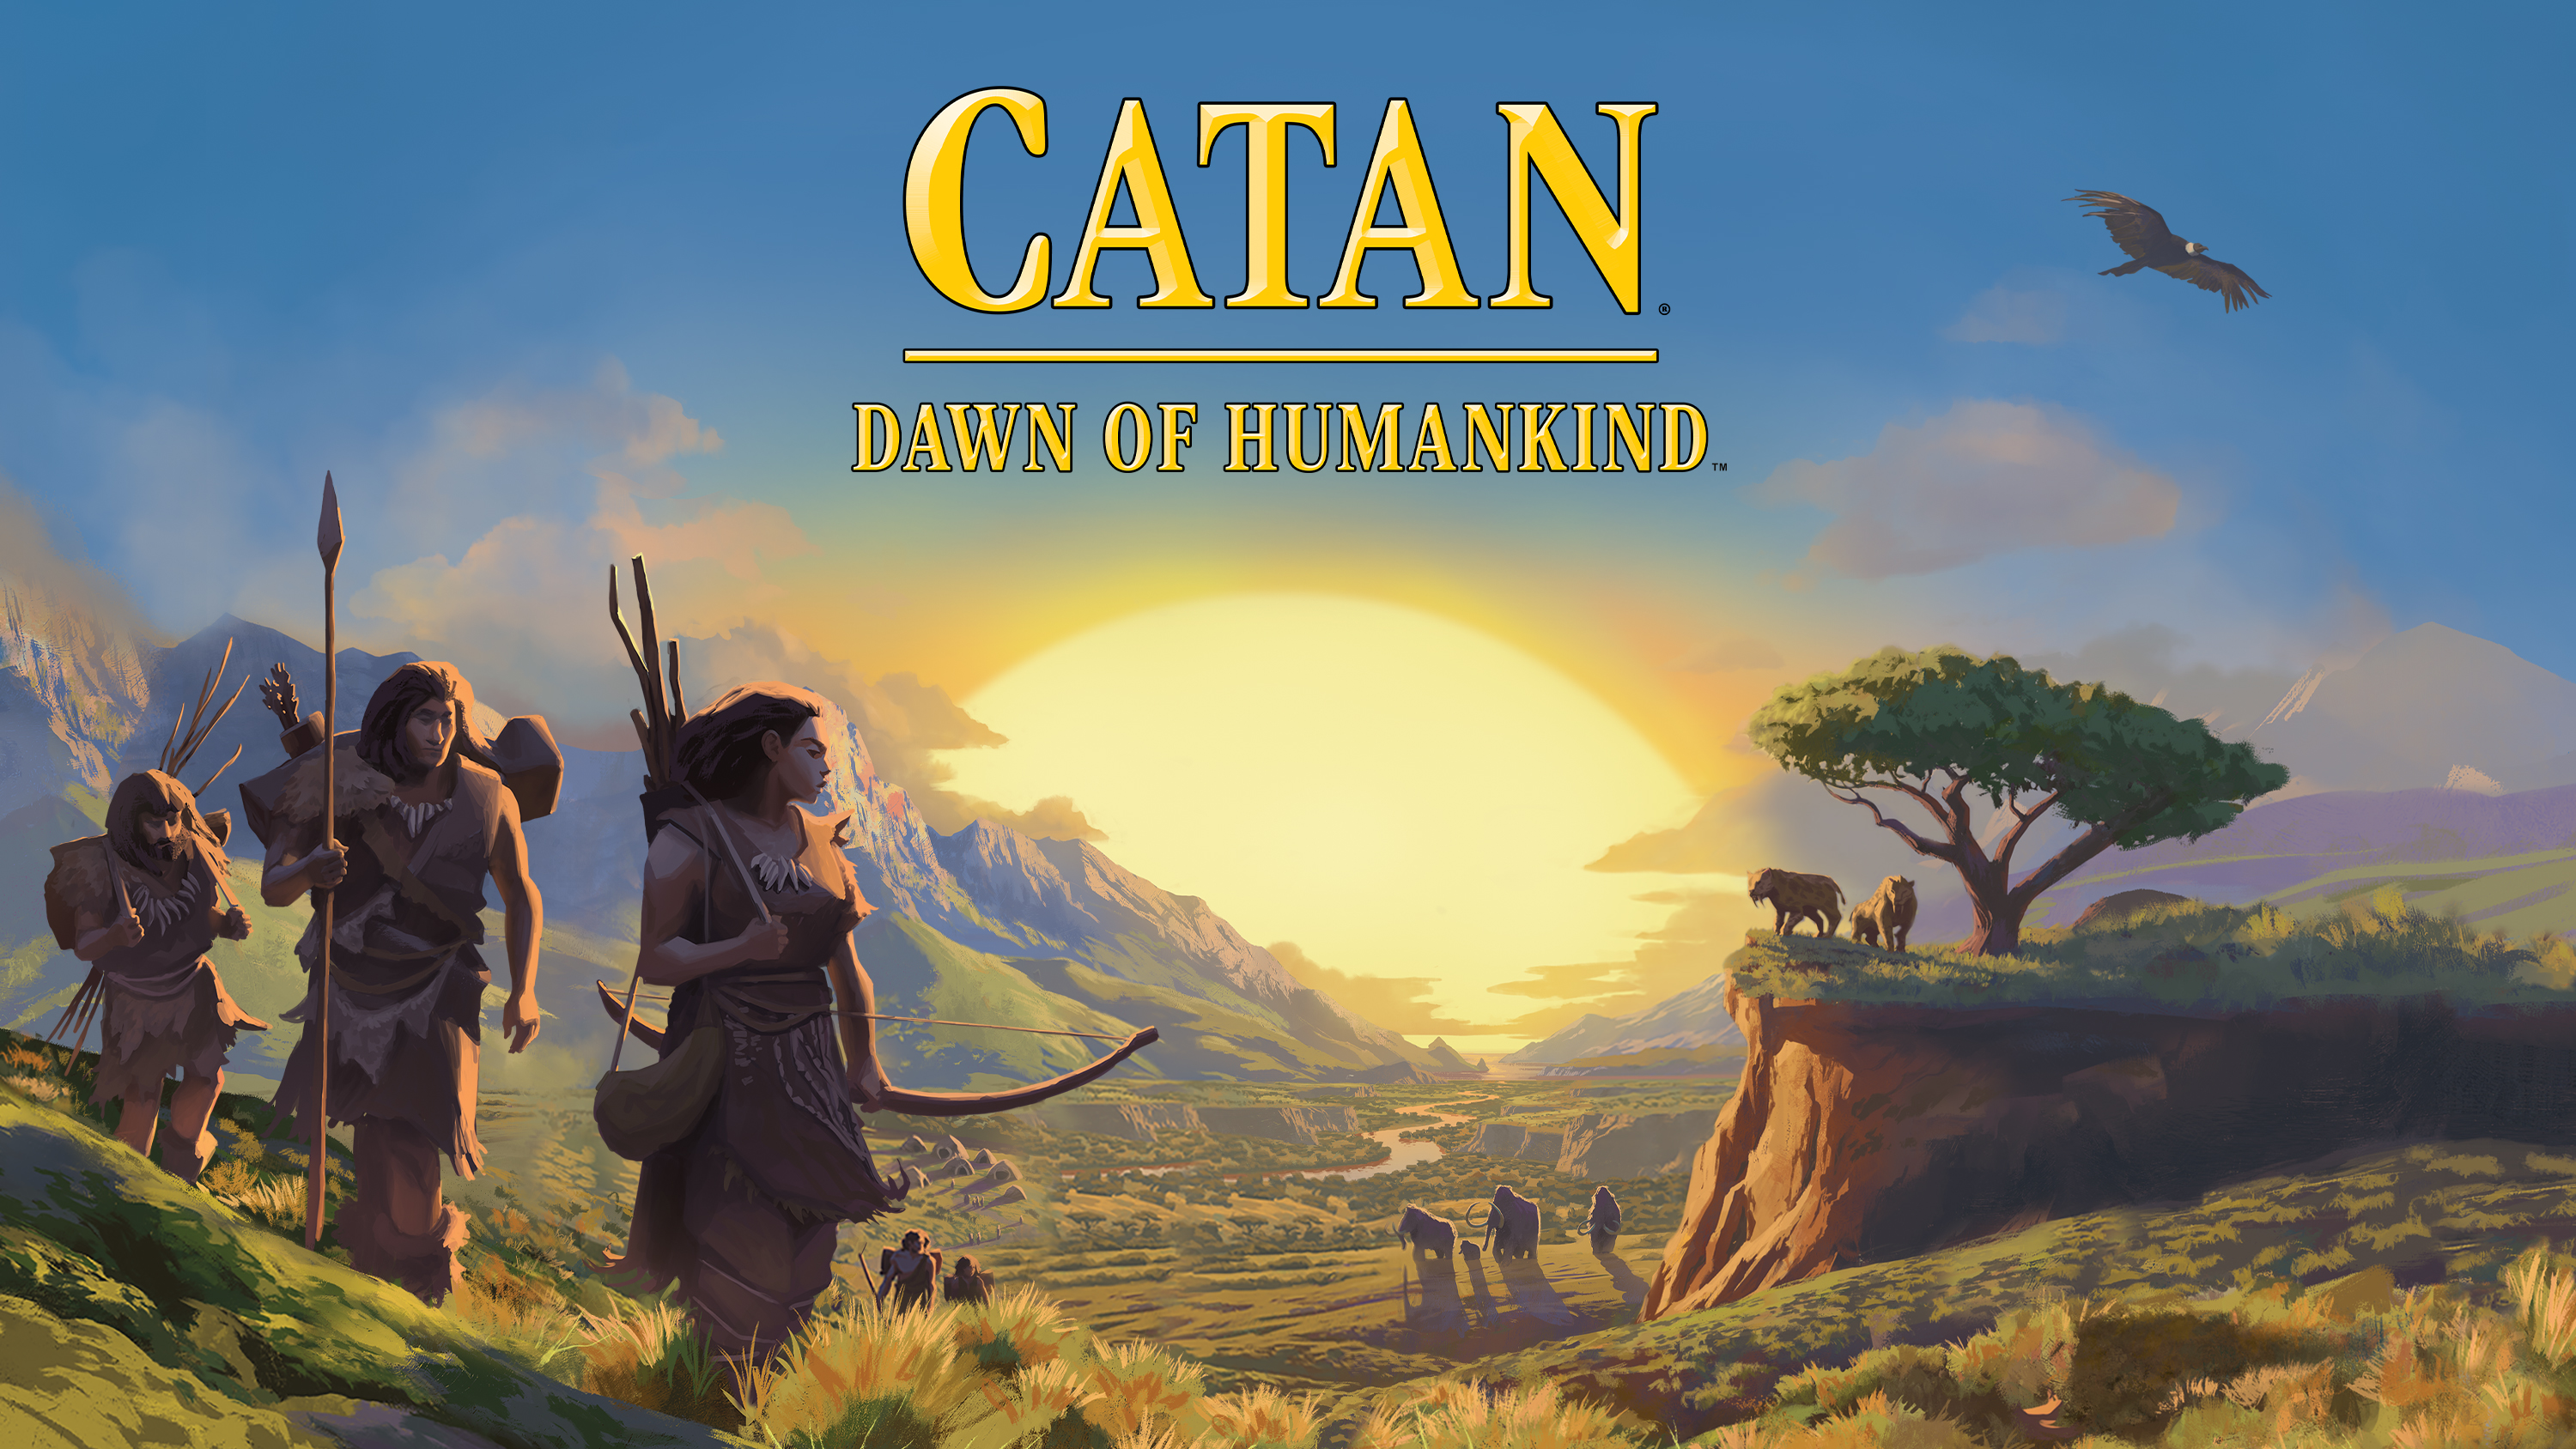 Klasyczny spinoff Catan zostanie ponownie uruchomiony jeszcze w tym roku: Dawn of Humankind